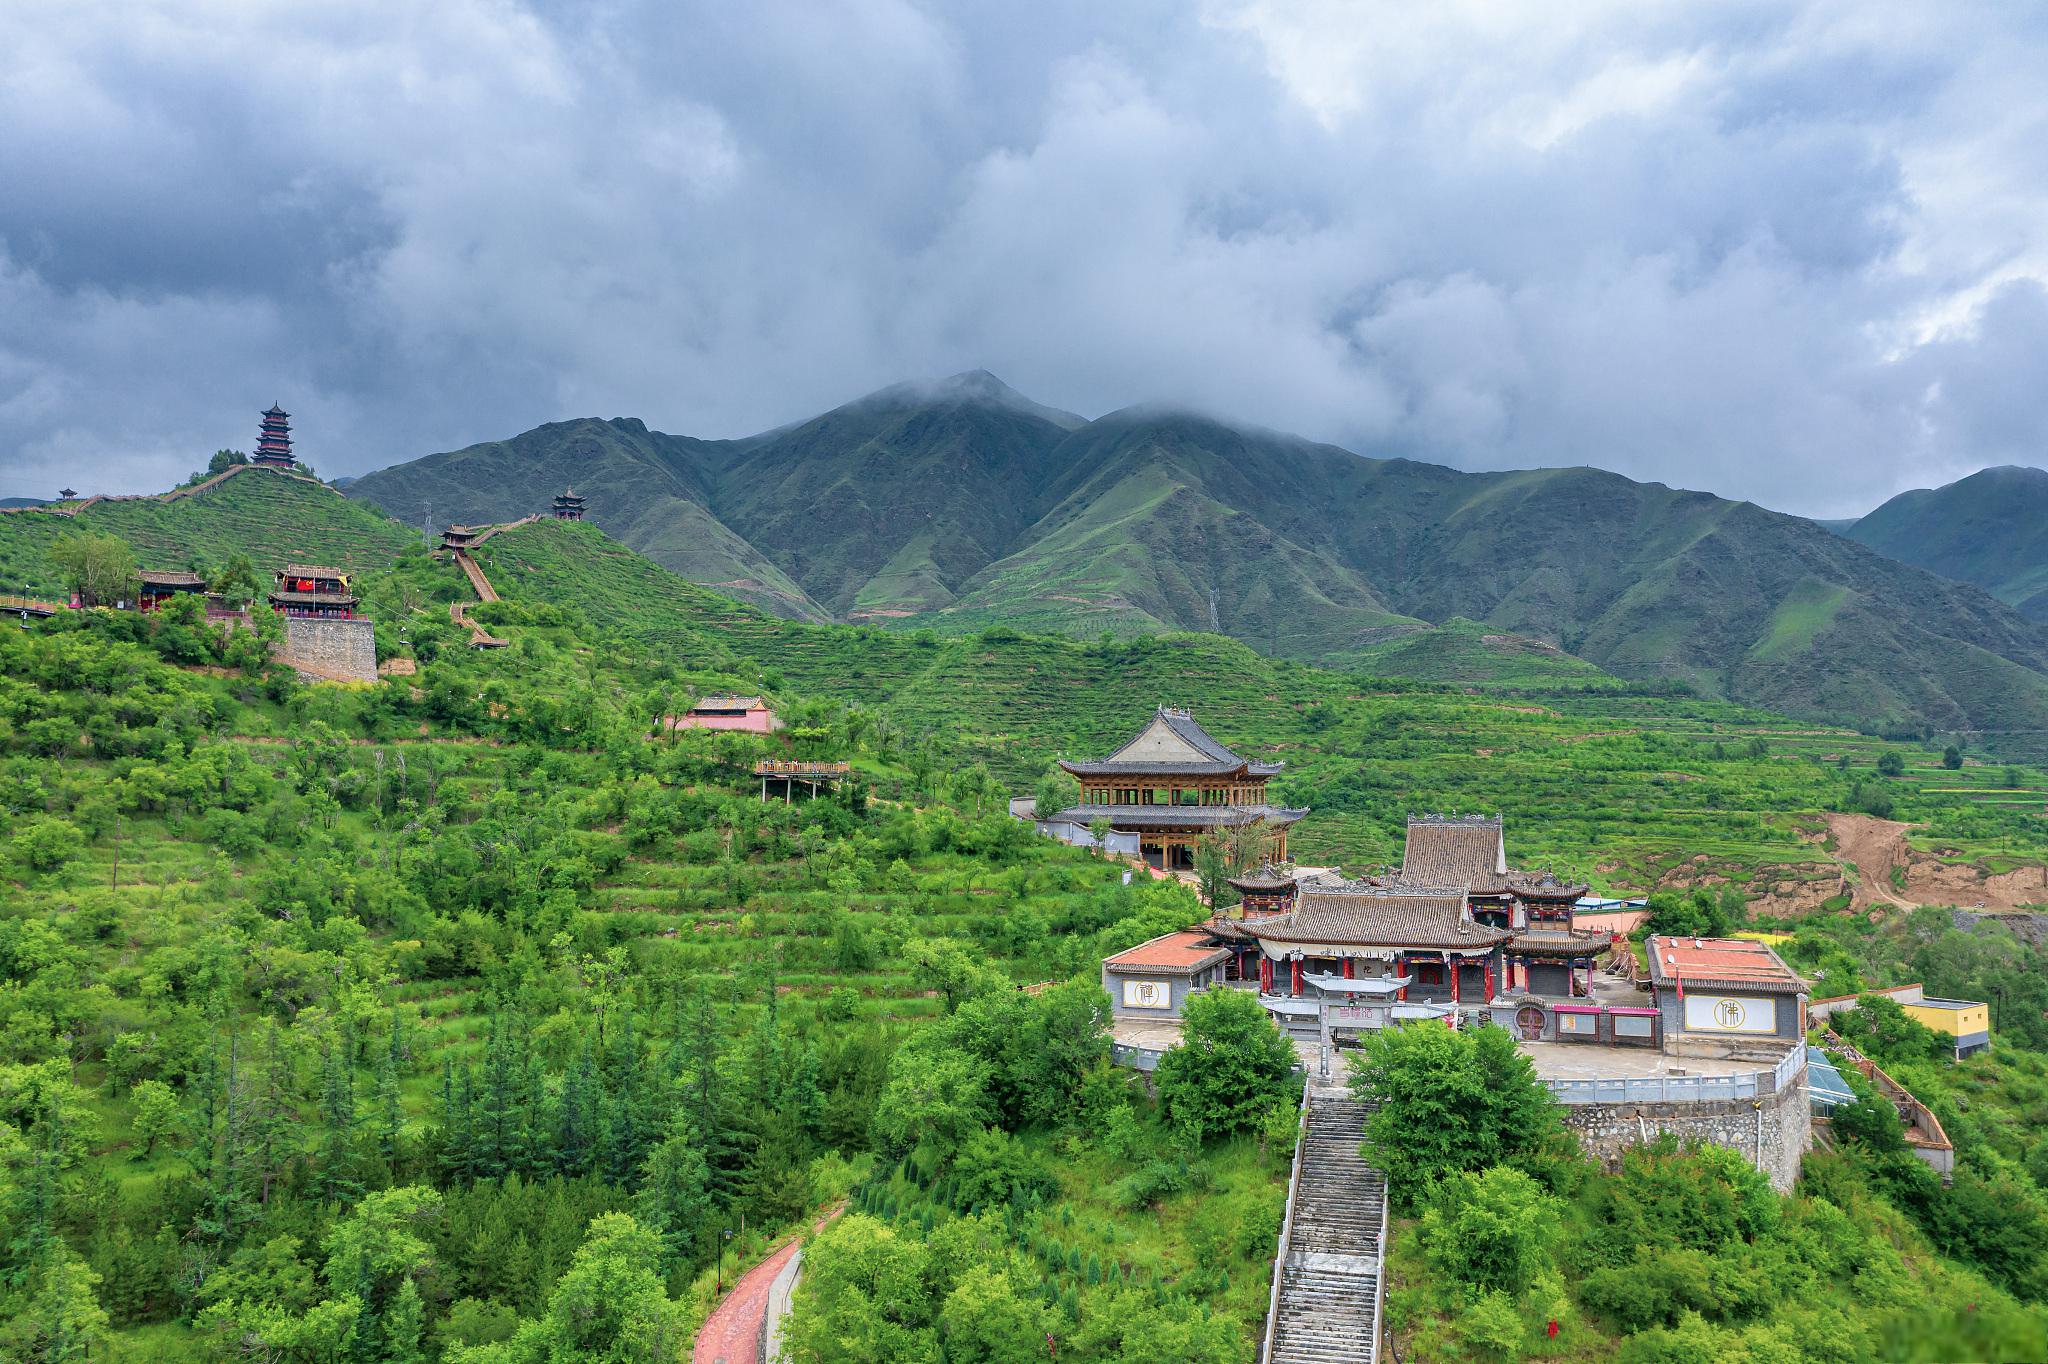 甘肃省和政县松鸣镇法台山景区是甘肃省内一处集自然风光,历史文化